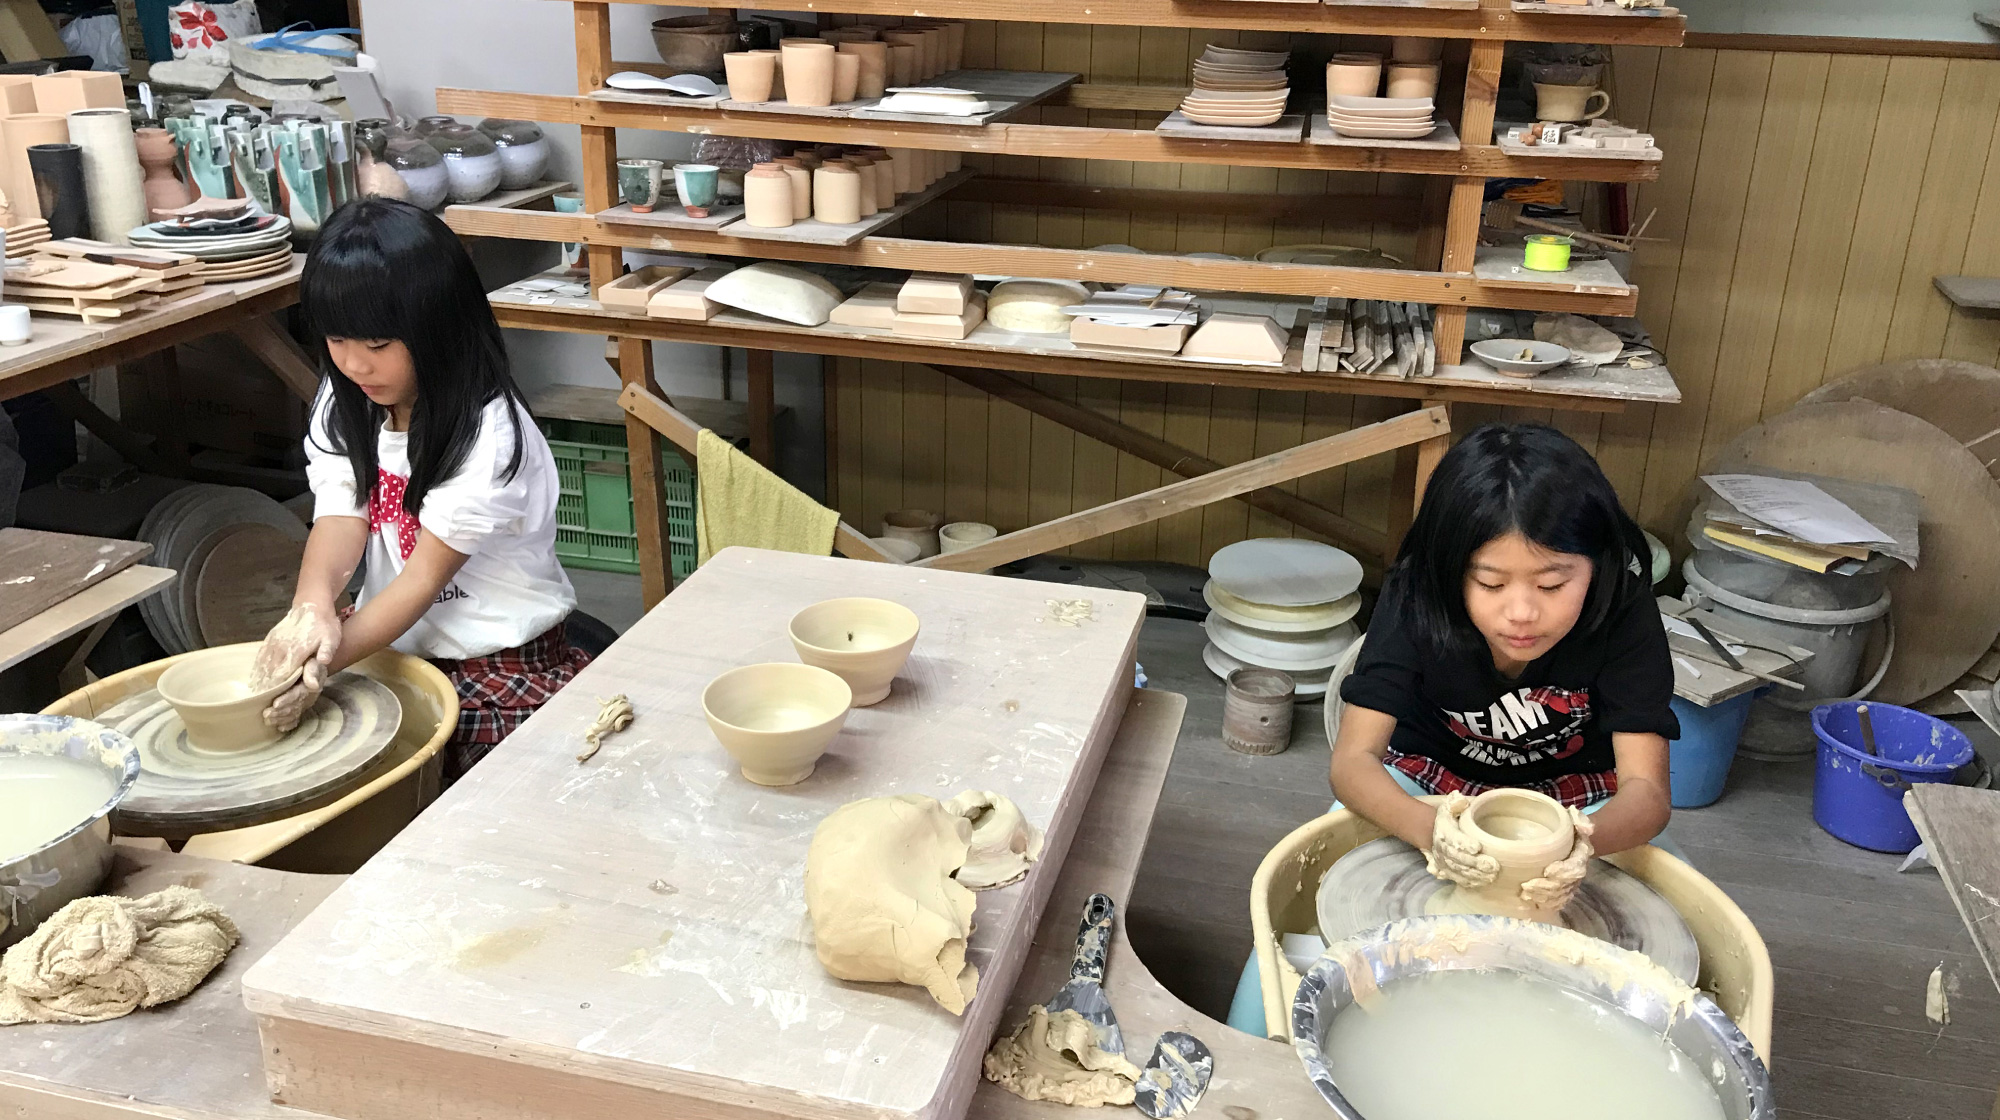 萩燒輪盤・手工成形製作體驗及彩繪體驗